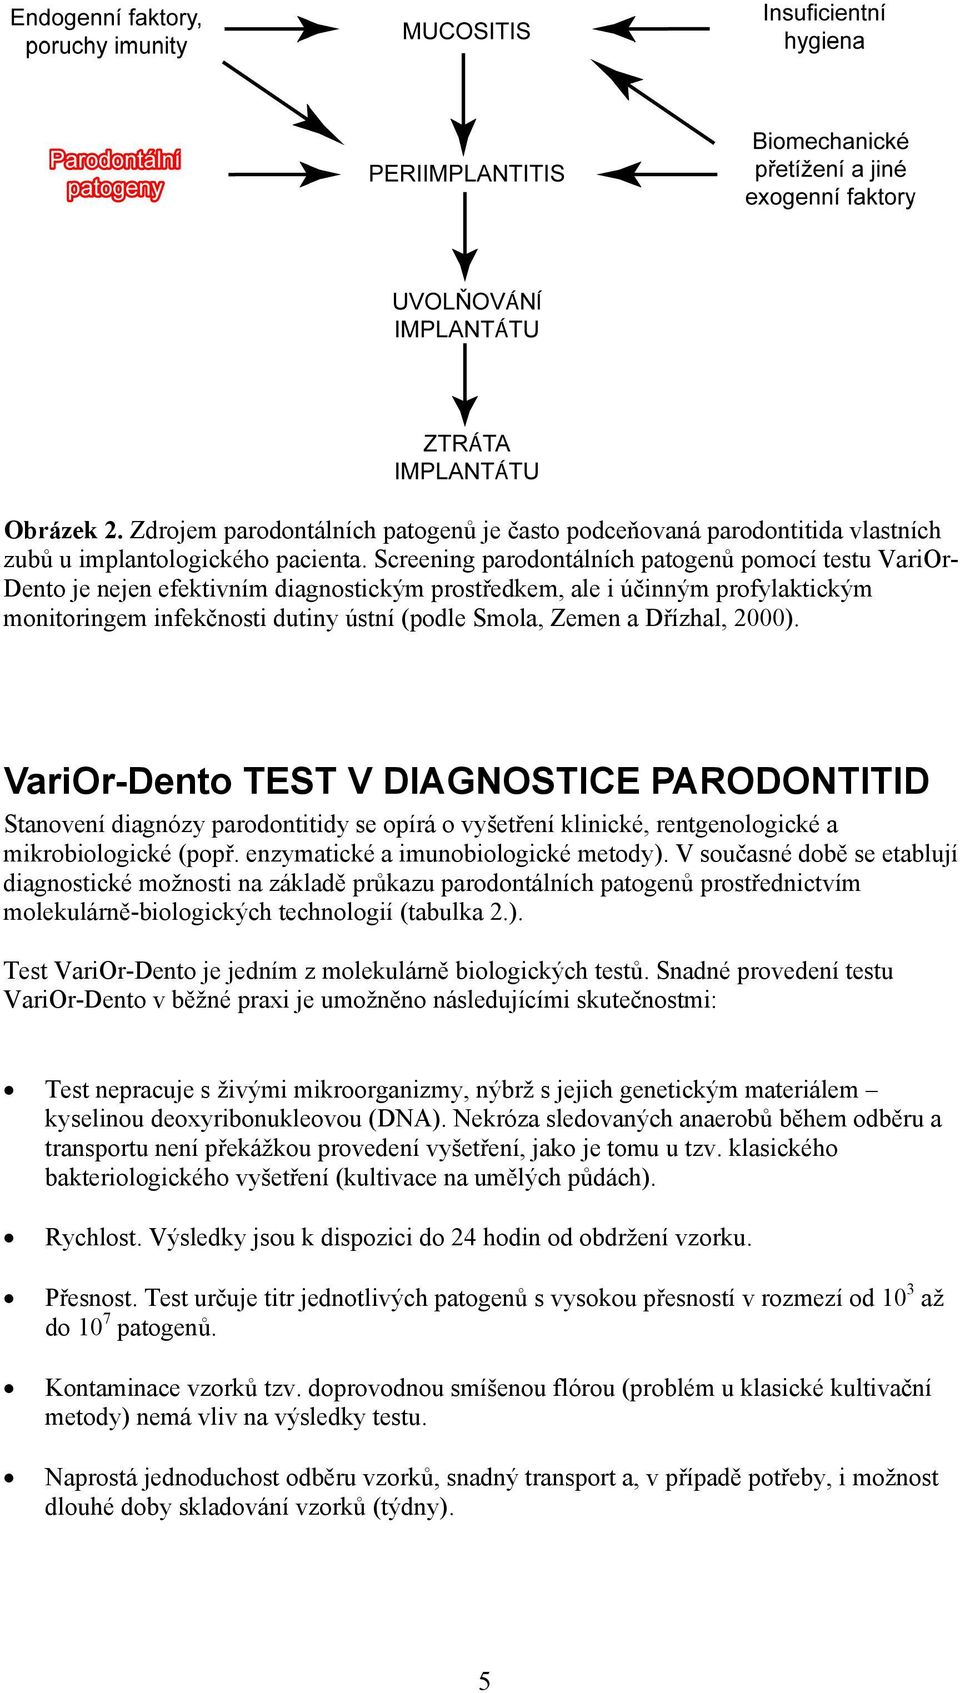 Dřízhal, 2000). VariOrDento TEST V DIAGNOSTICE PARODONTITID Stanovení diagnózy parodontitidy se opírá o vyšetření klinické, rentgenologické a mikrobiologické (popř.